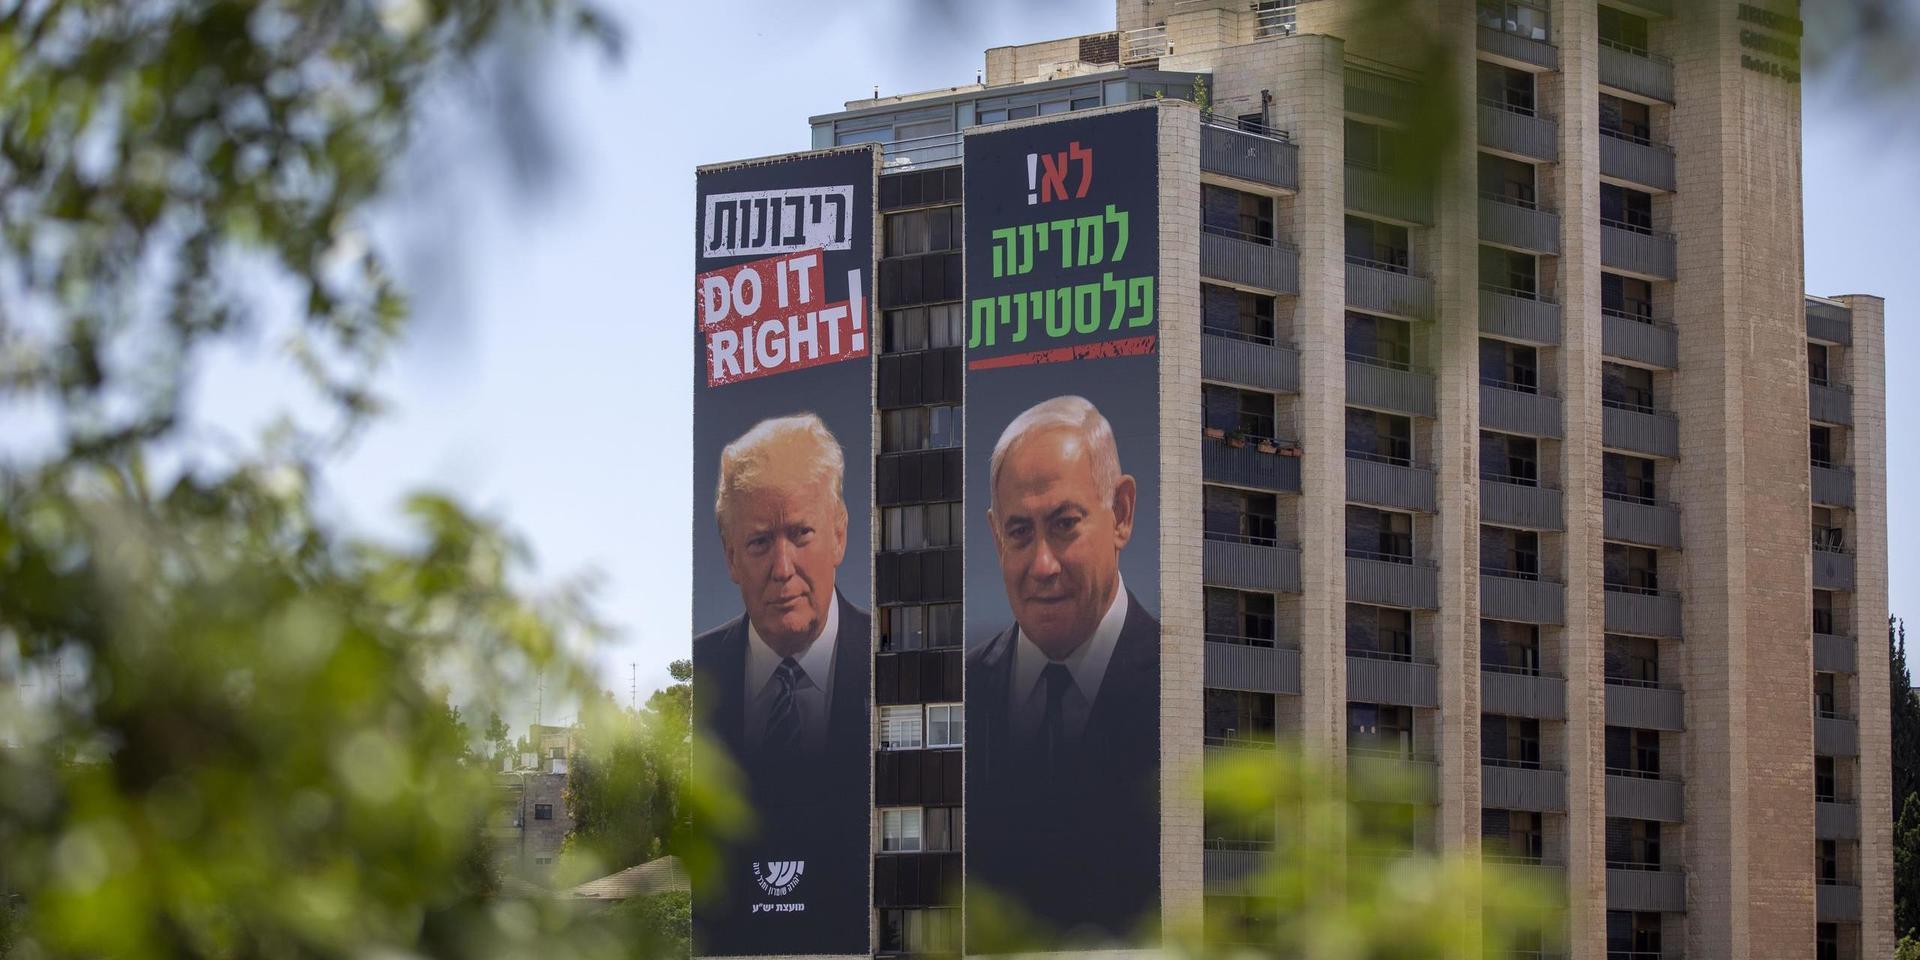 Reklamtavlor föreställande USA:s president Donald Trump och Israels premiärminister Benjamin Netanyahu i Jerusalem proklamerar 'Nej till en palestinsk stat'.